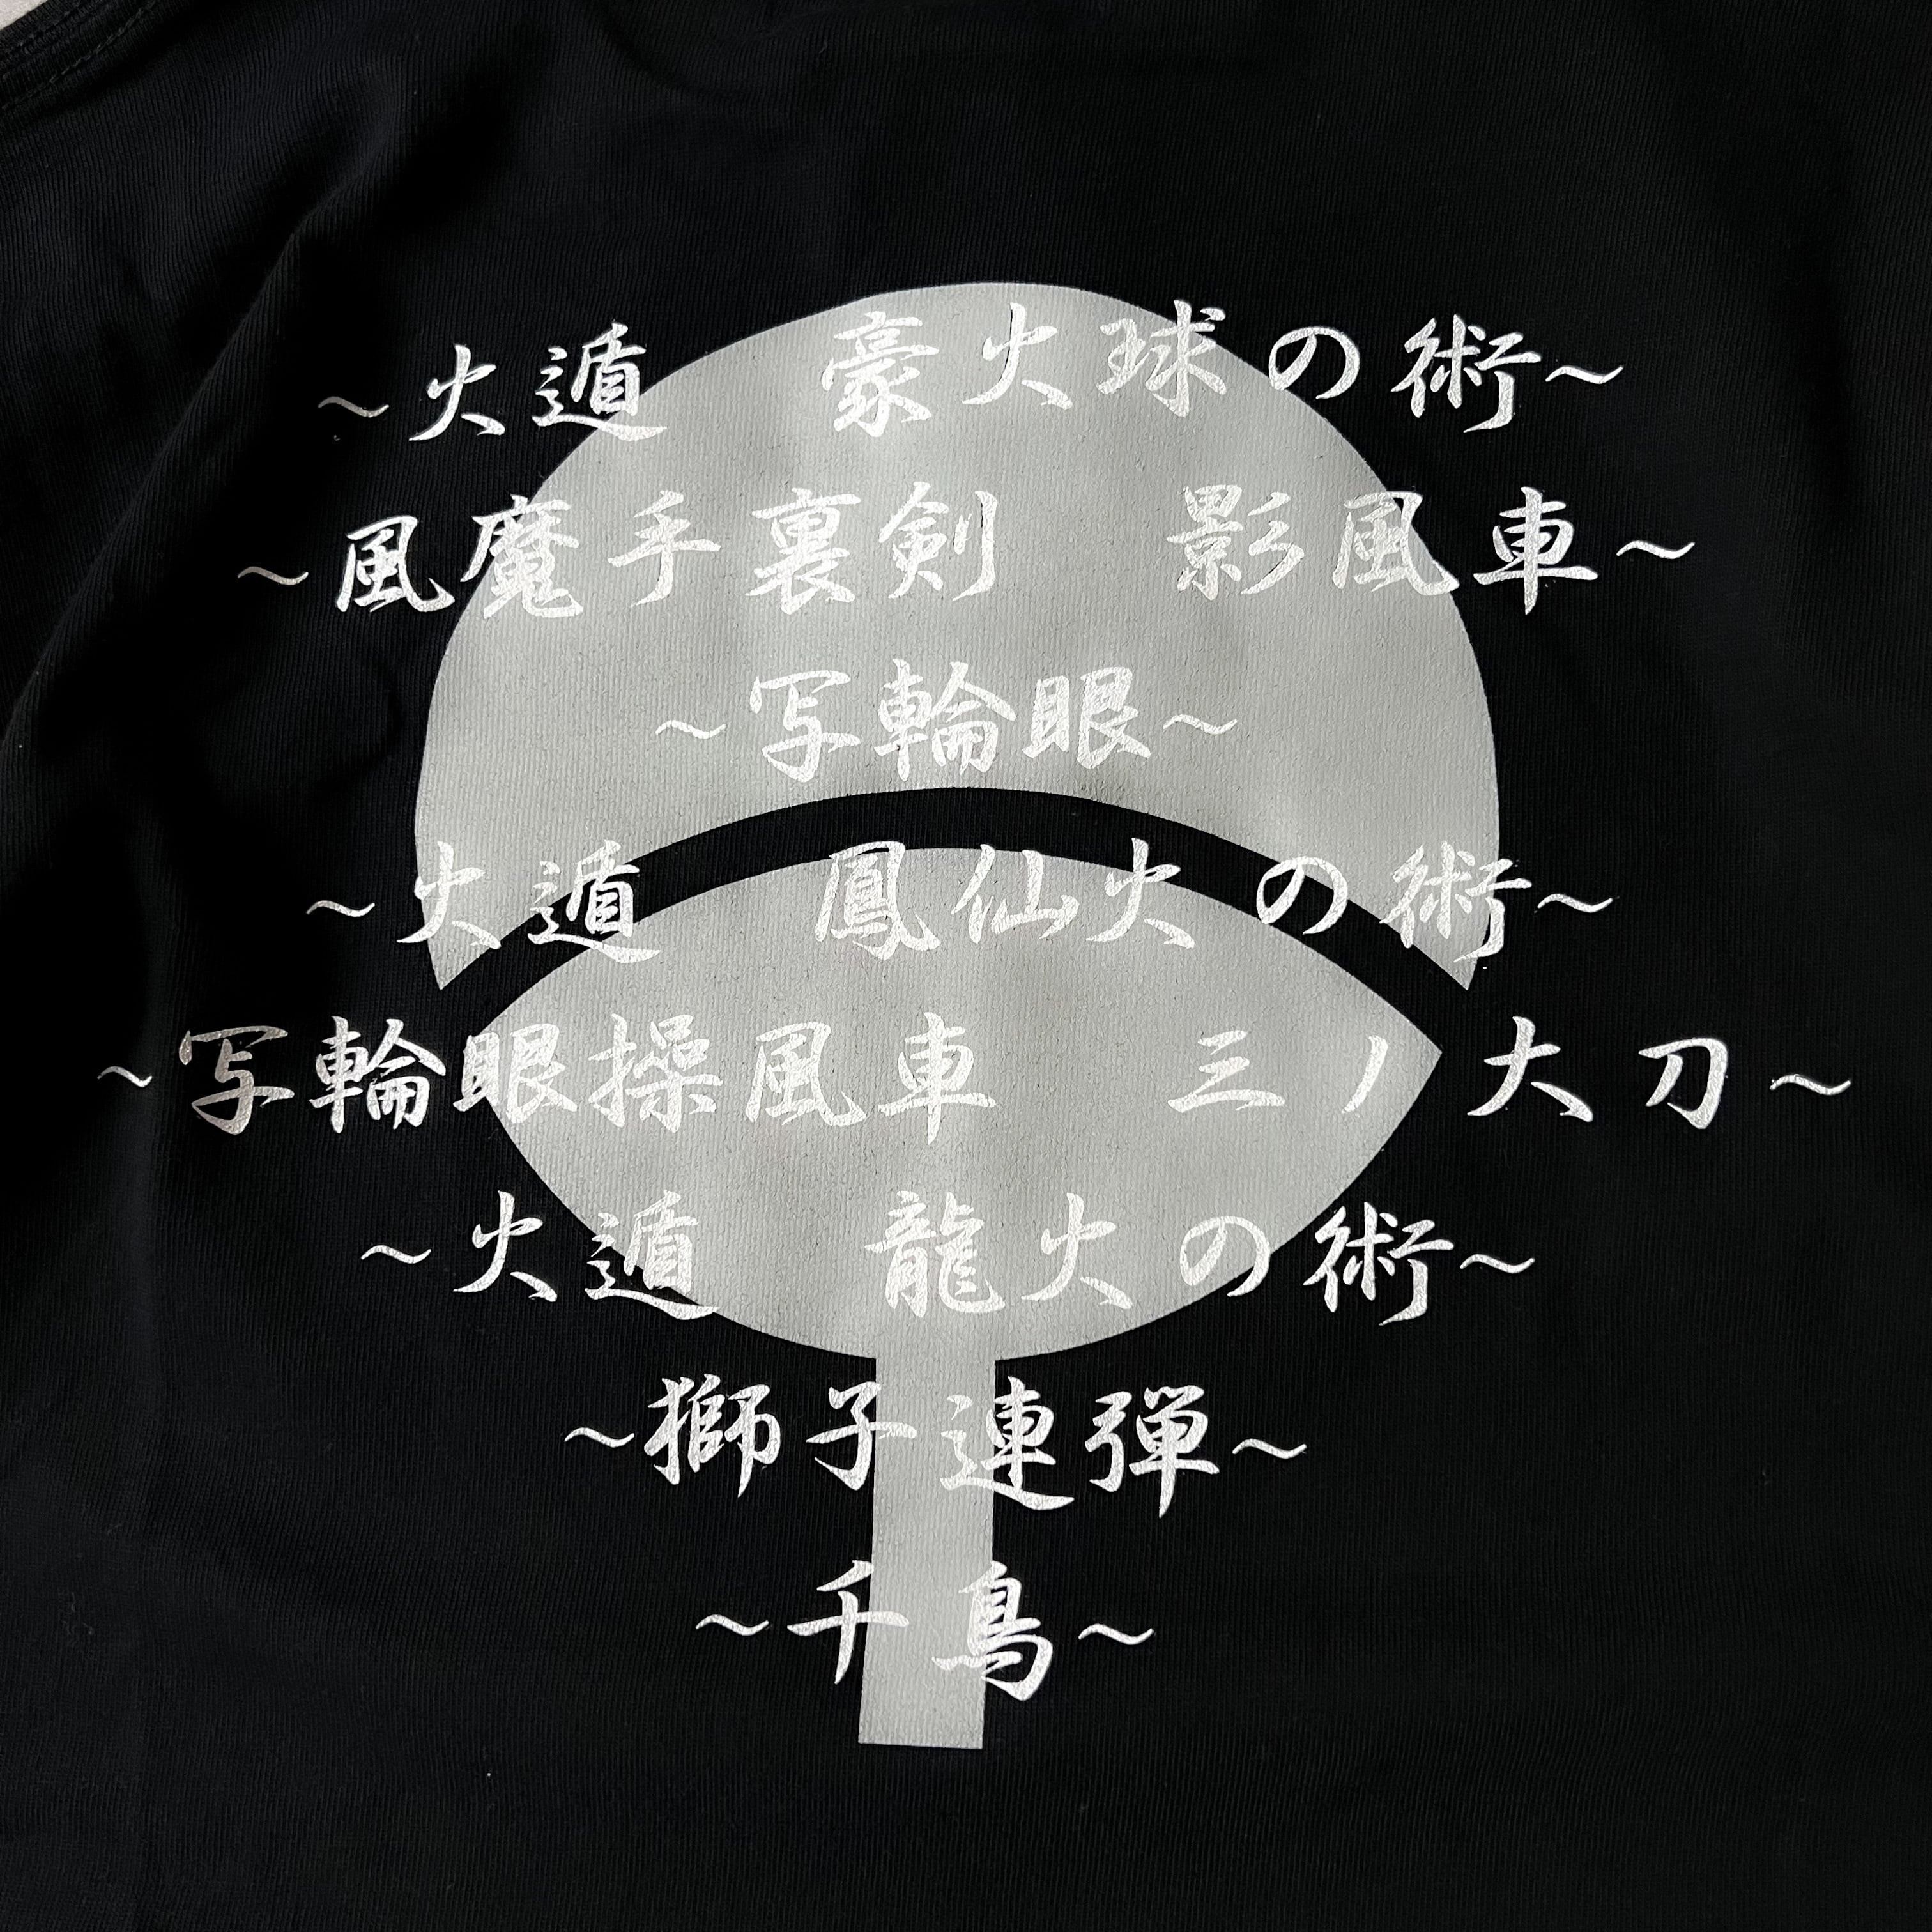 00s “NARUTO” やたら懐かしい初期頃のサスケモチーフのtシャツ タグ